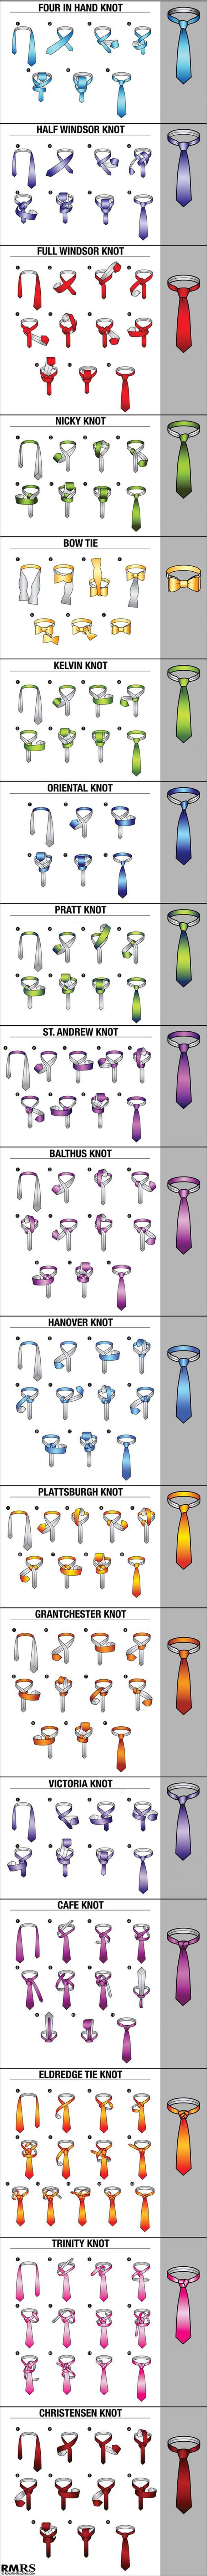 18 maneiras de dar nó na gravata